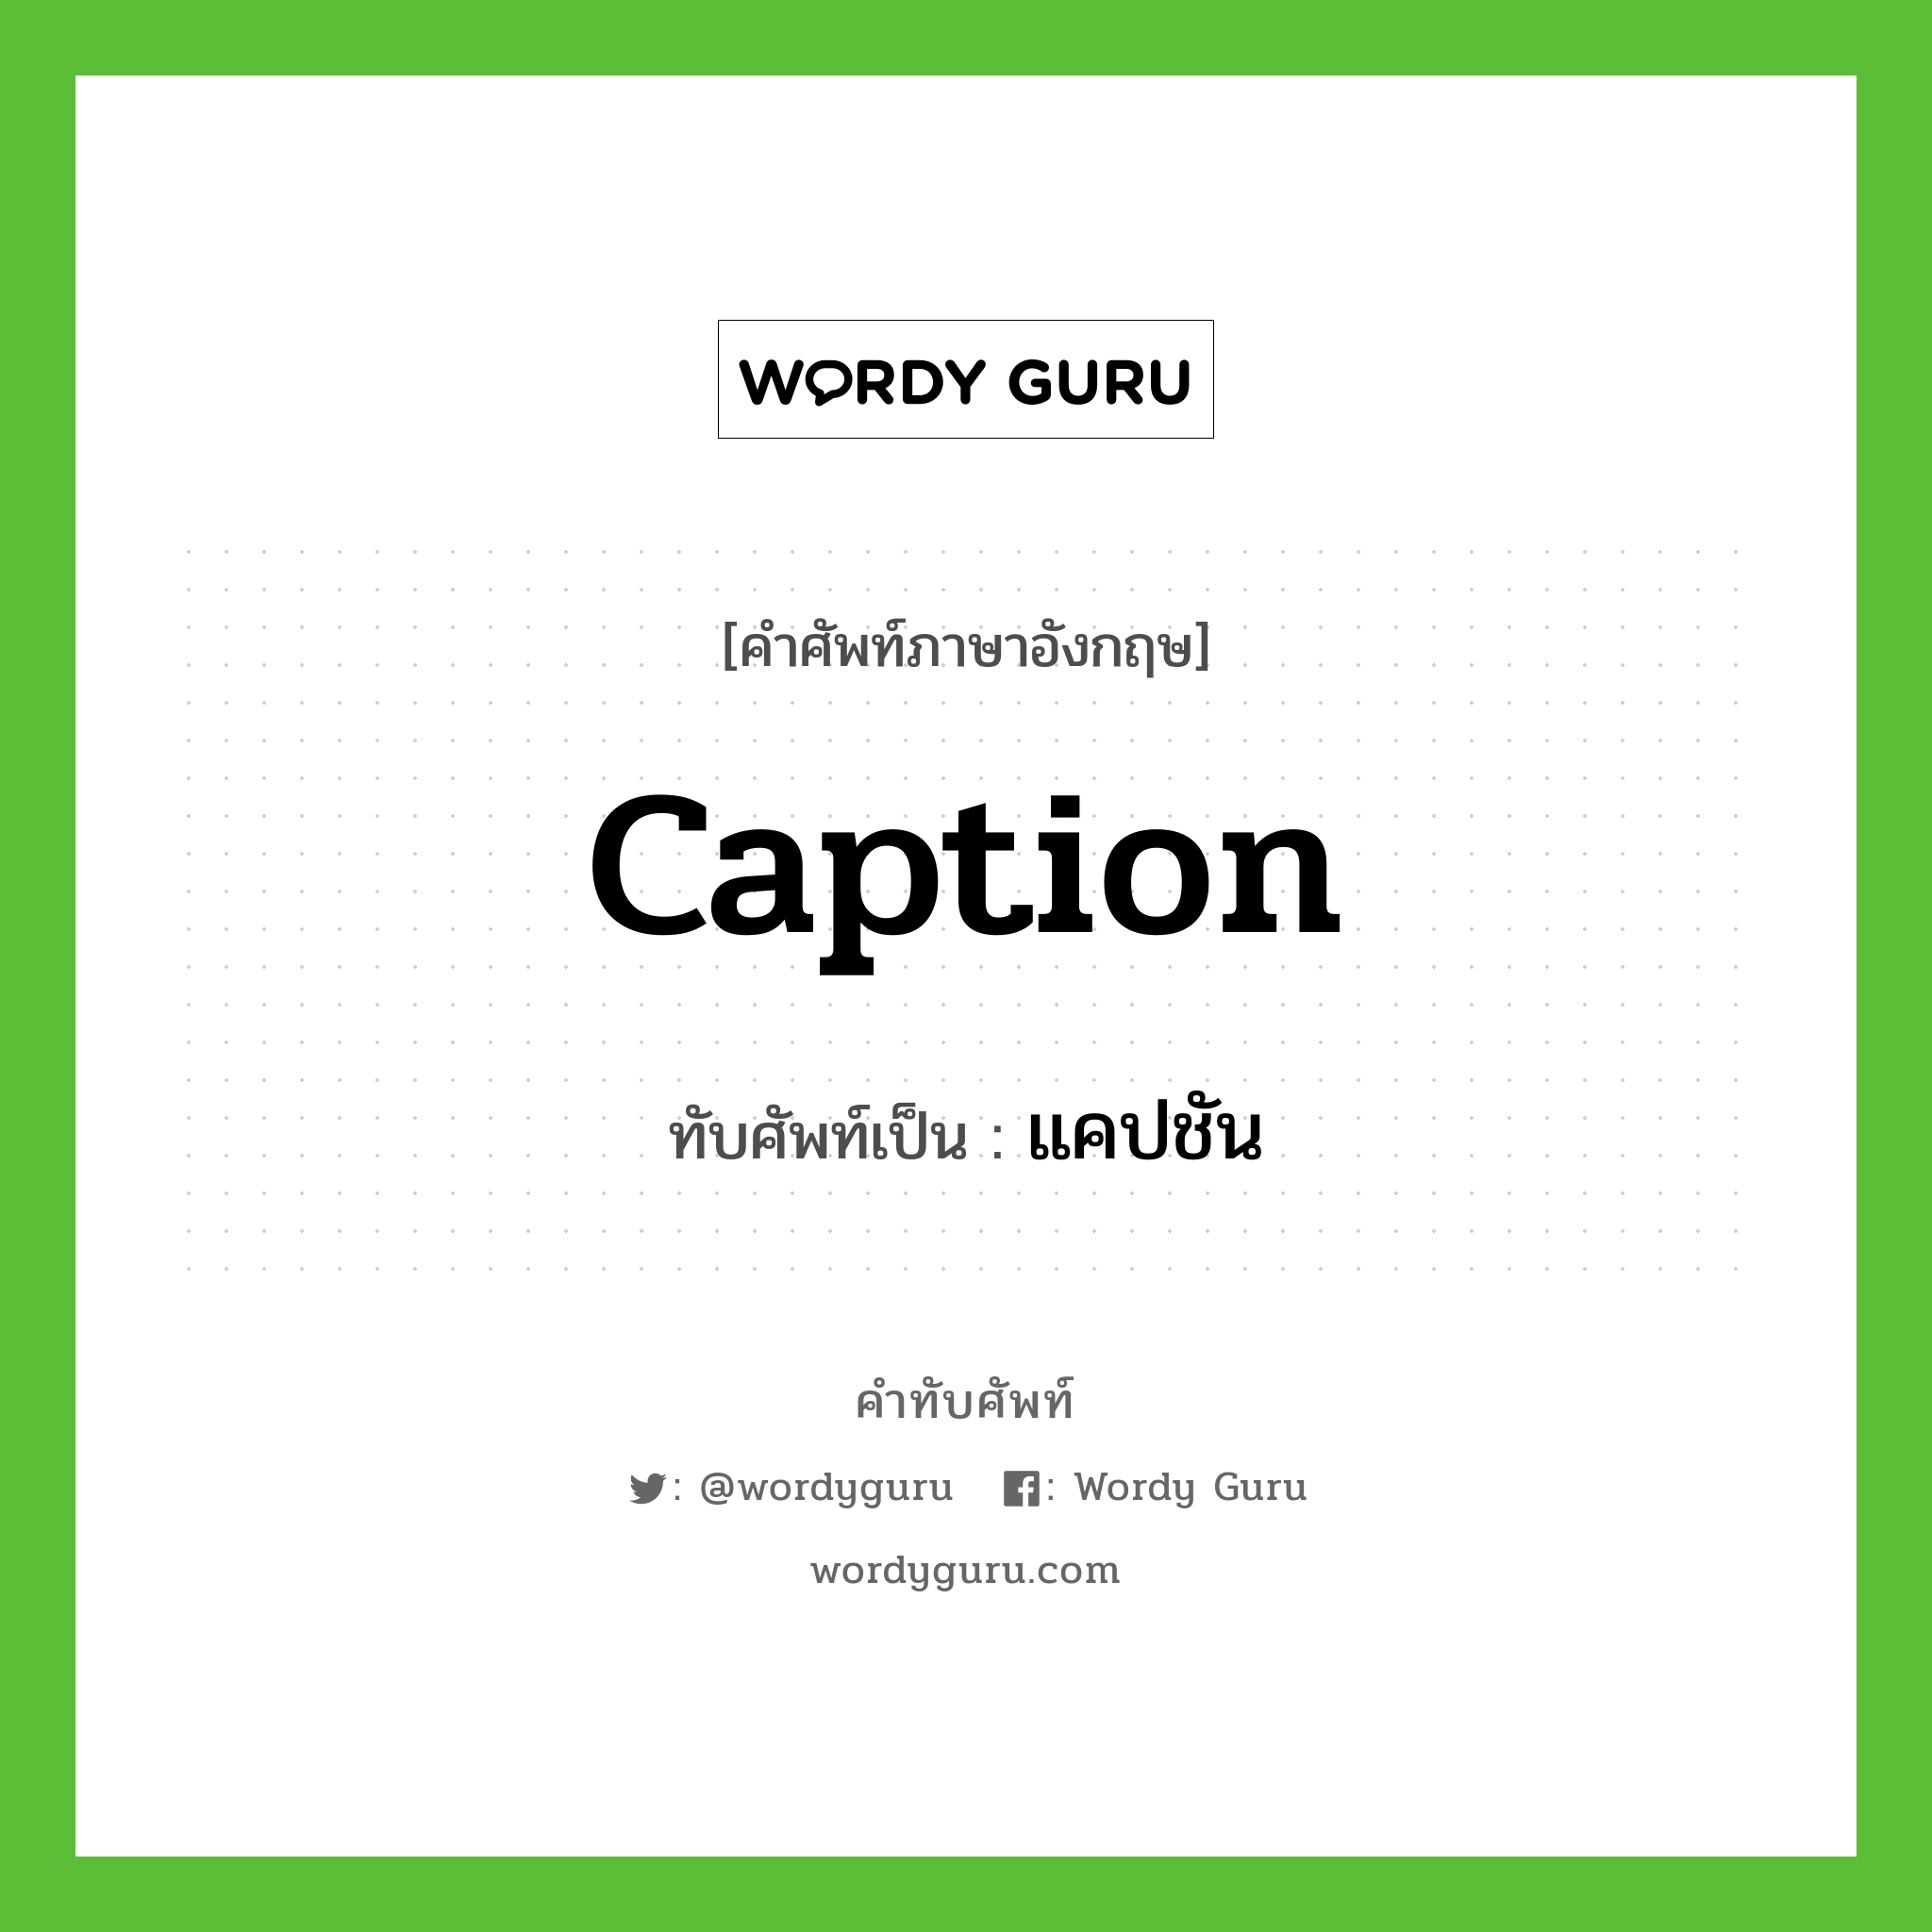 caption เขียนเป็นคำไทยว่าอะไร?, คำศัพท์ภาษาอังกฤษ caption ทับศัพท์เป็น แคปชัน